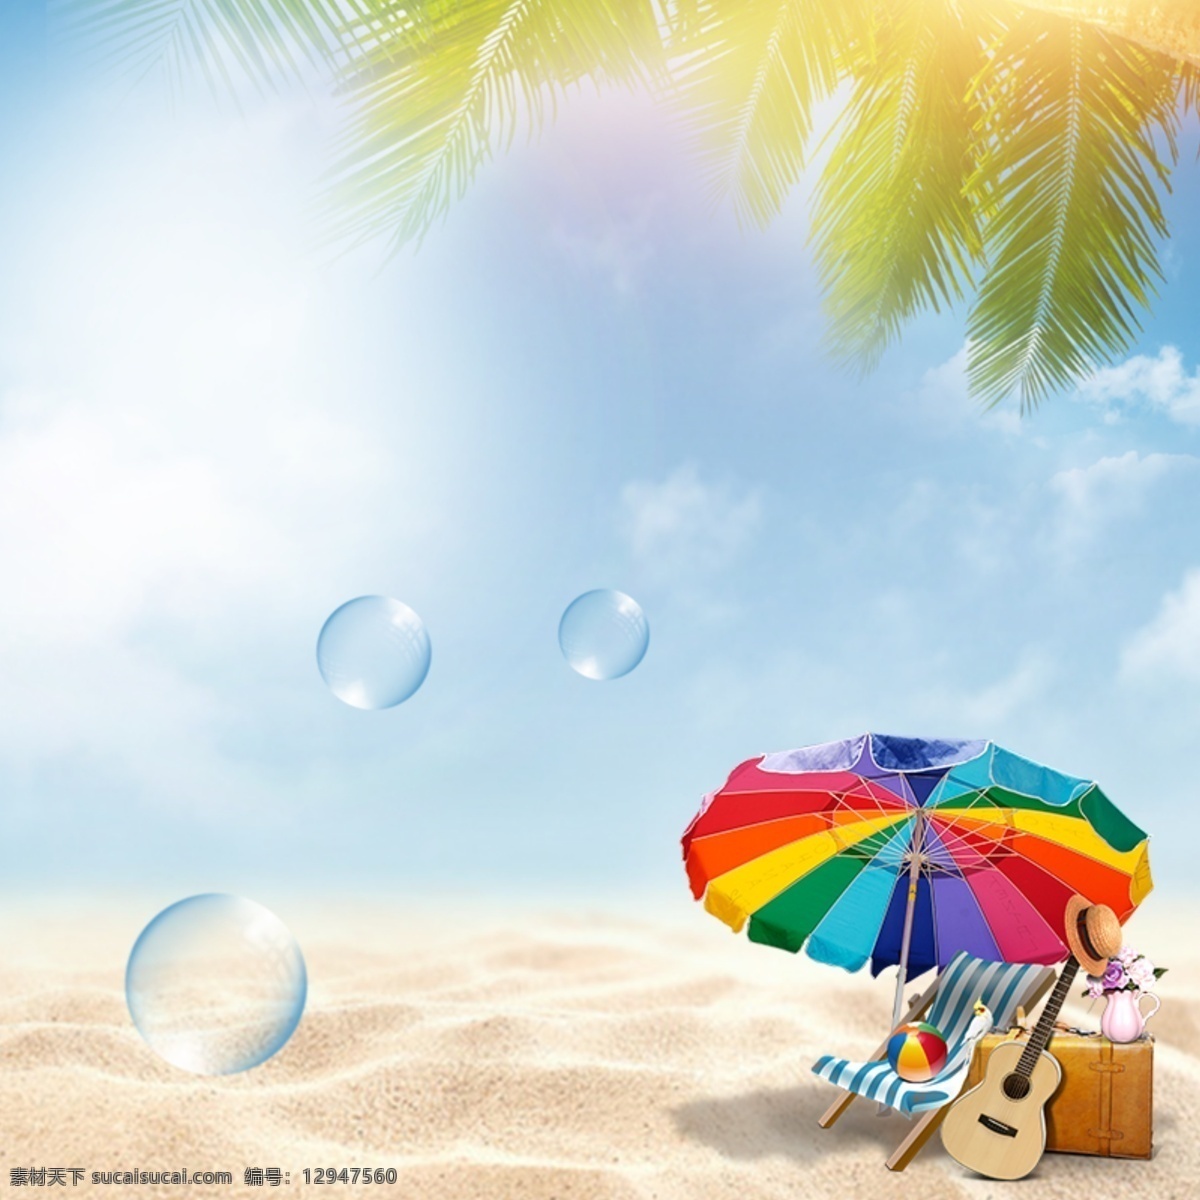 夏日沙滩背景 阳光沙滩 椰树 透明泡泡 主图 清爽背景 夏日背景 广告平面海报 分层 背景素材